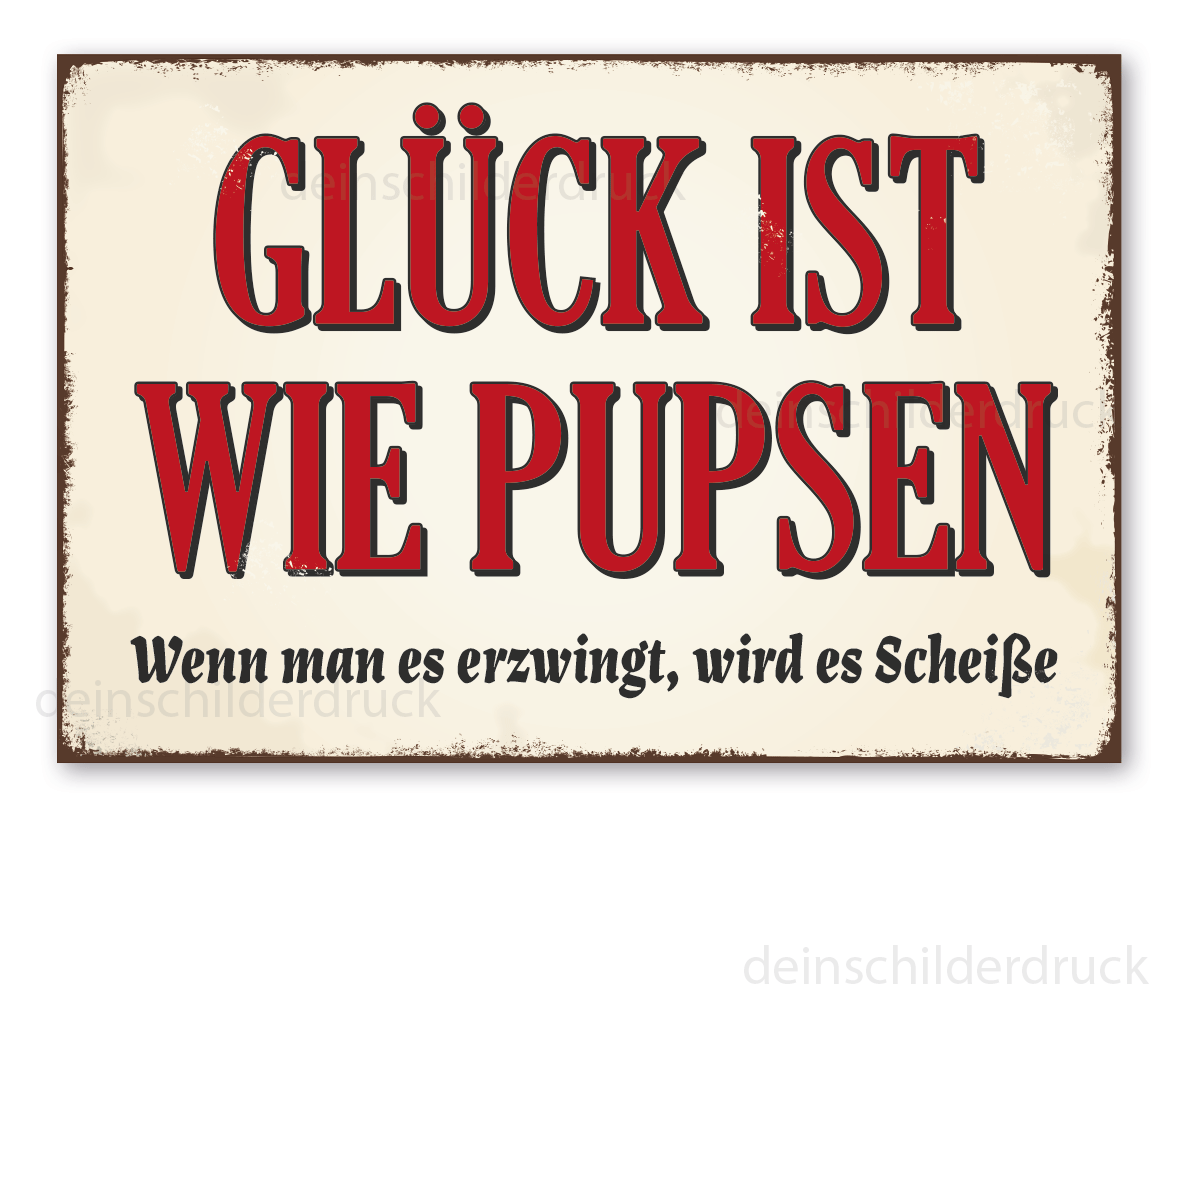 https://www.deinschilderdruck.de/media/image/46/a8/dc/VIN-1065-Gluck-ist-wie-Pupsen-Wenn-man-es-erzwingt-wird-es-Scheisse-300-x-450-mm.png